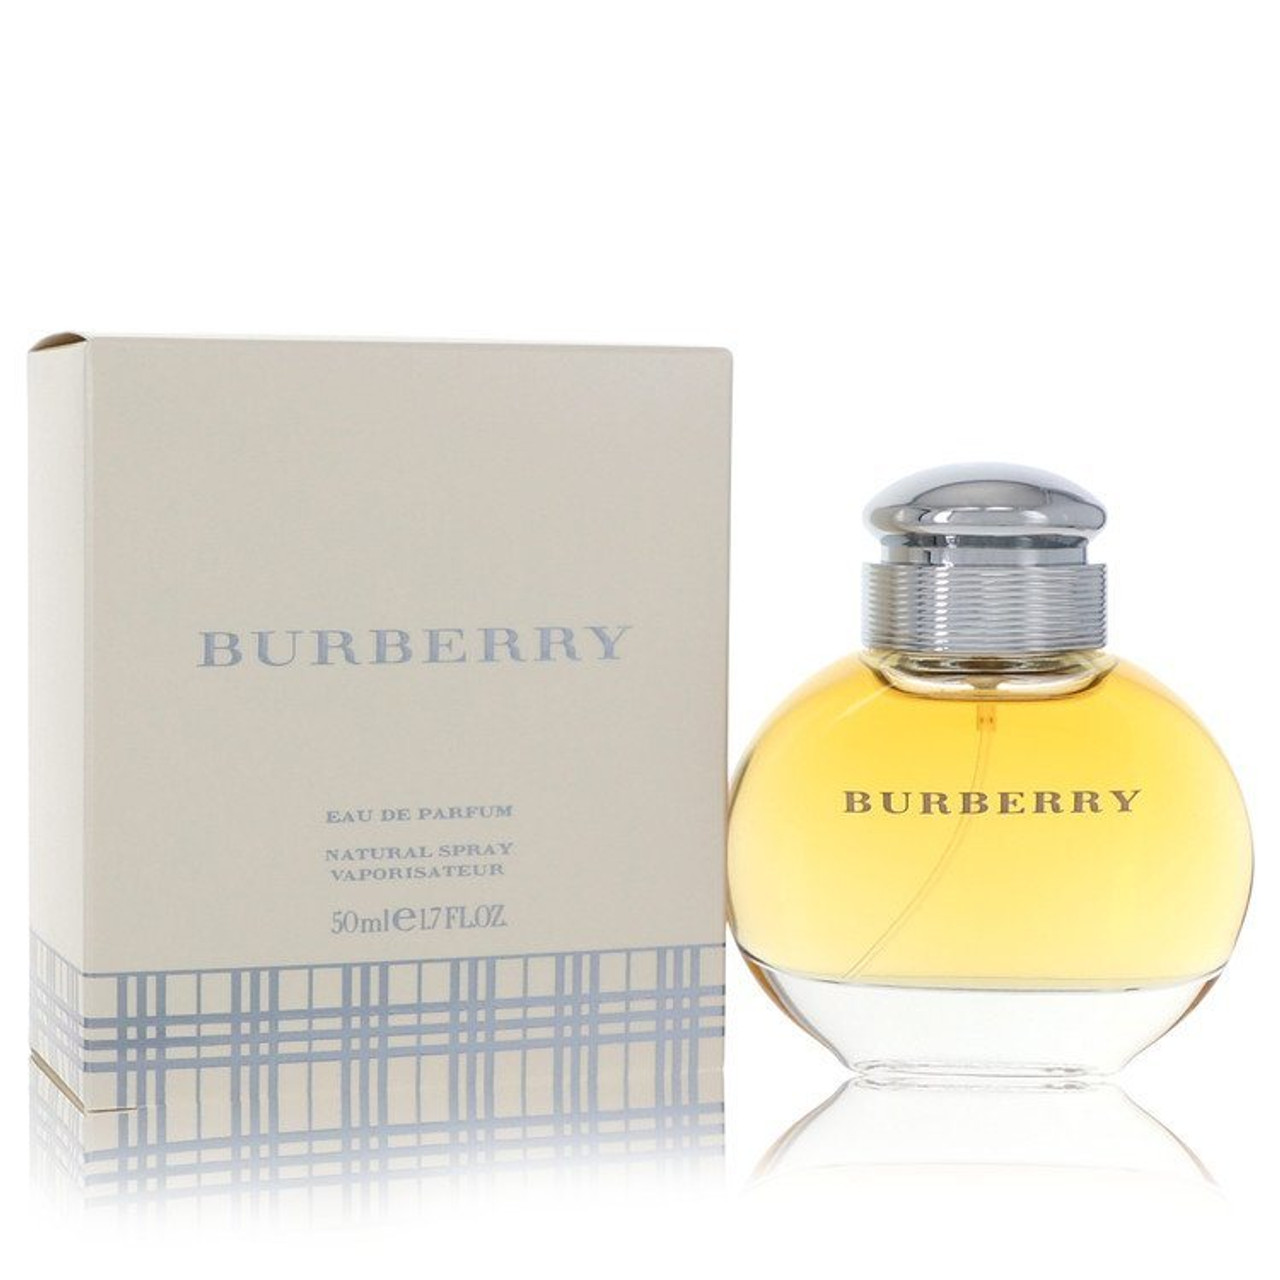 BURBERRY by Burberry Eau De Parfum Spray  oz 